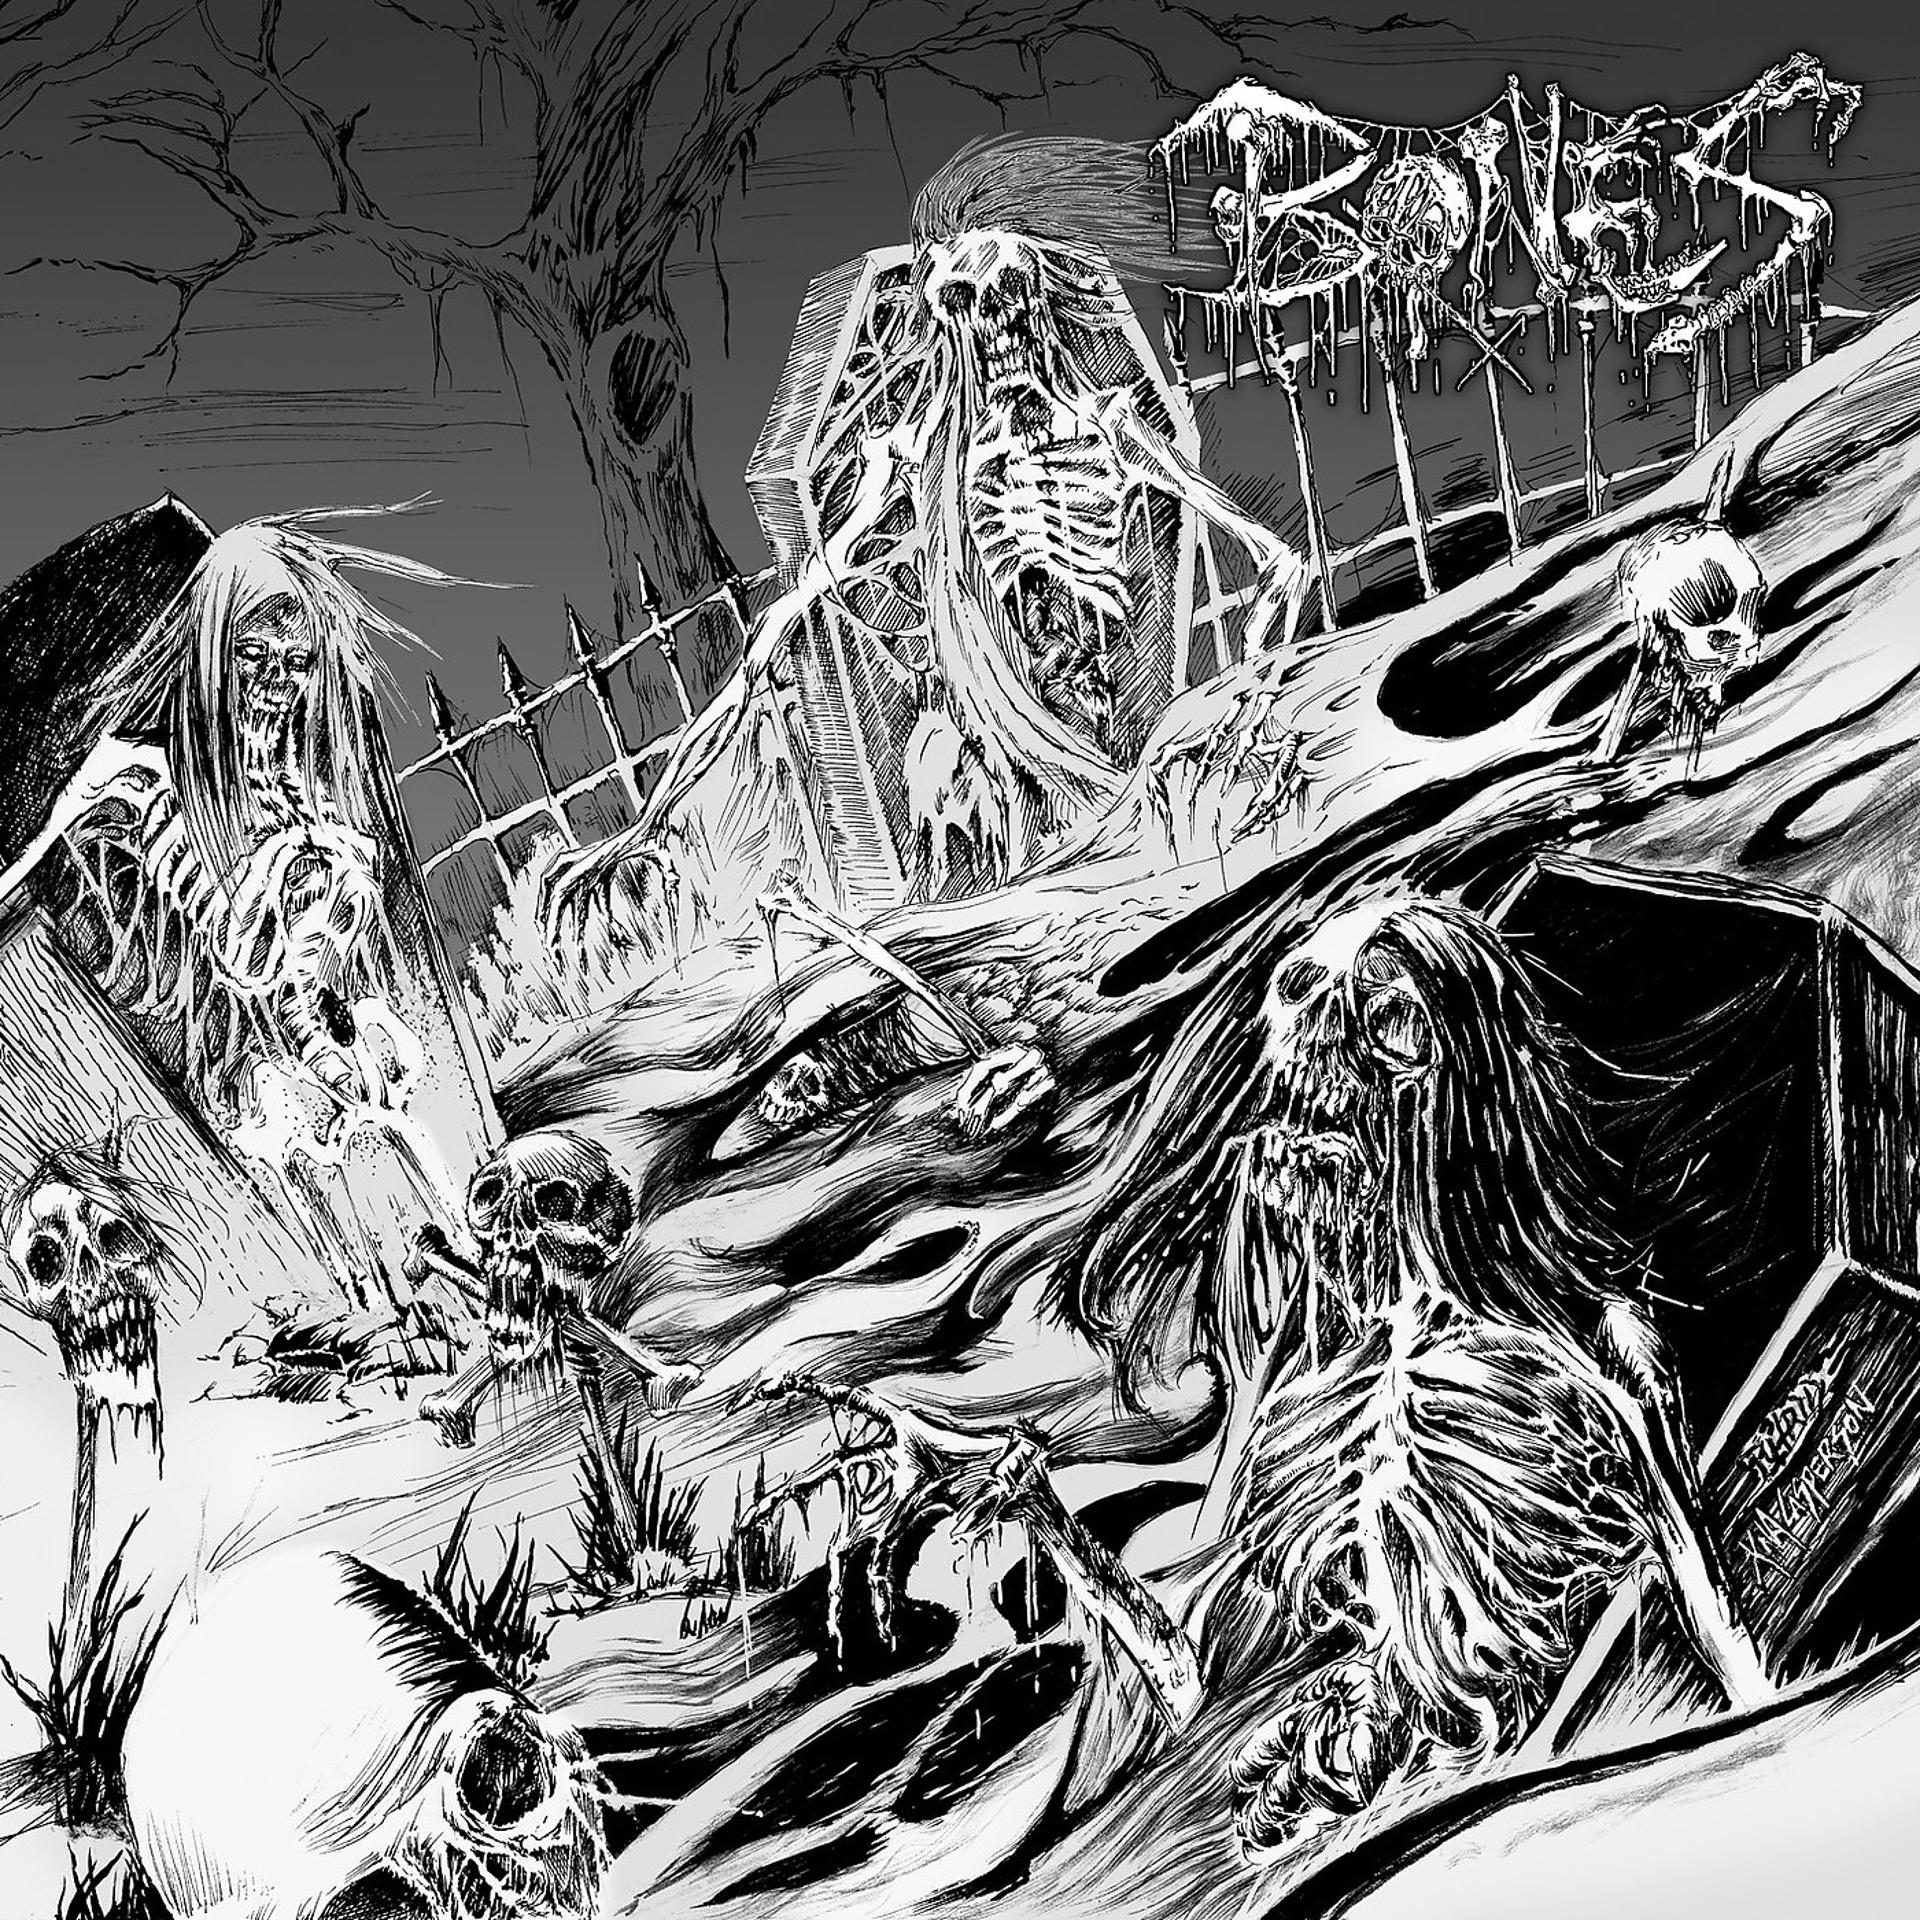 Le bones. Bones (рэпер). Bones обложки альбомов. Bones livingsucks. Bones (рэпер) альбомы.